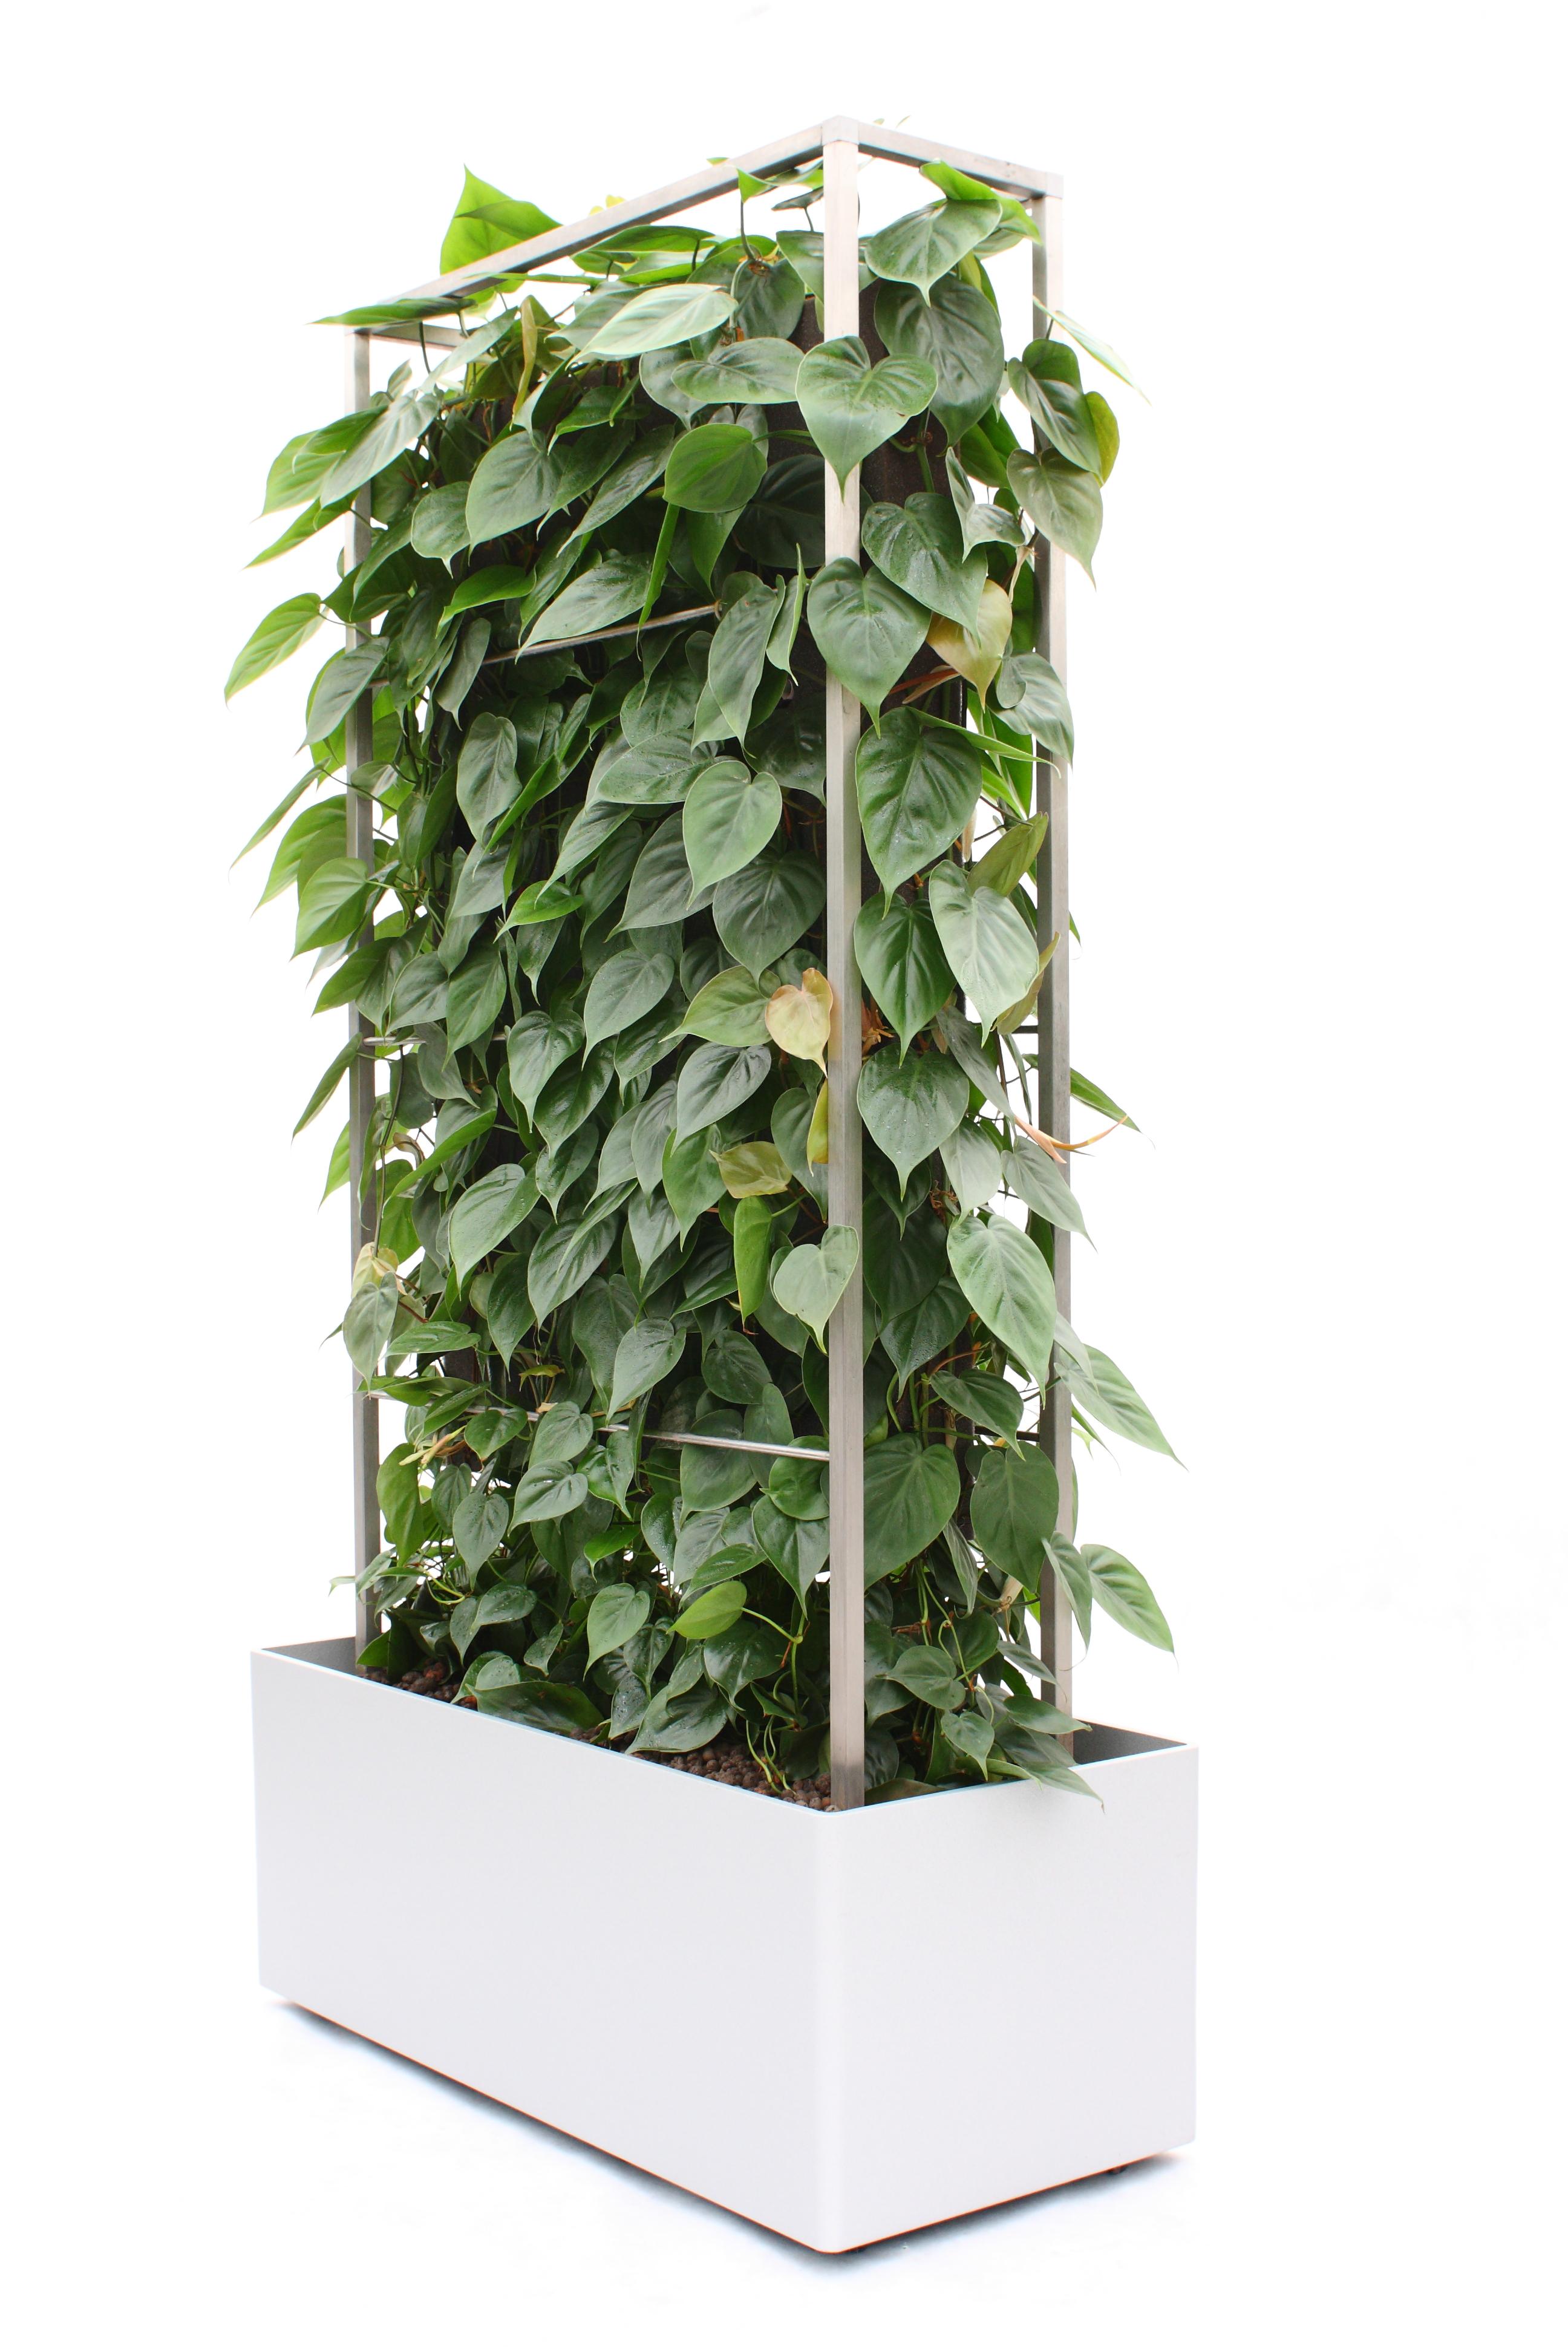 Pflanzen-Paravent / Mobiler Raumteiler #paravent #sichtschutz #sitzecke #raumteiler #schallschutz ©Kremkau Raumbegrünung